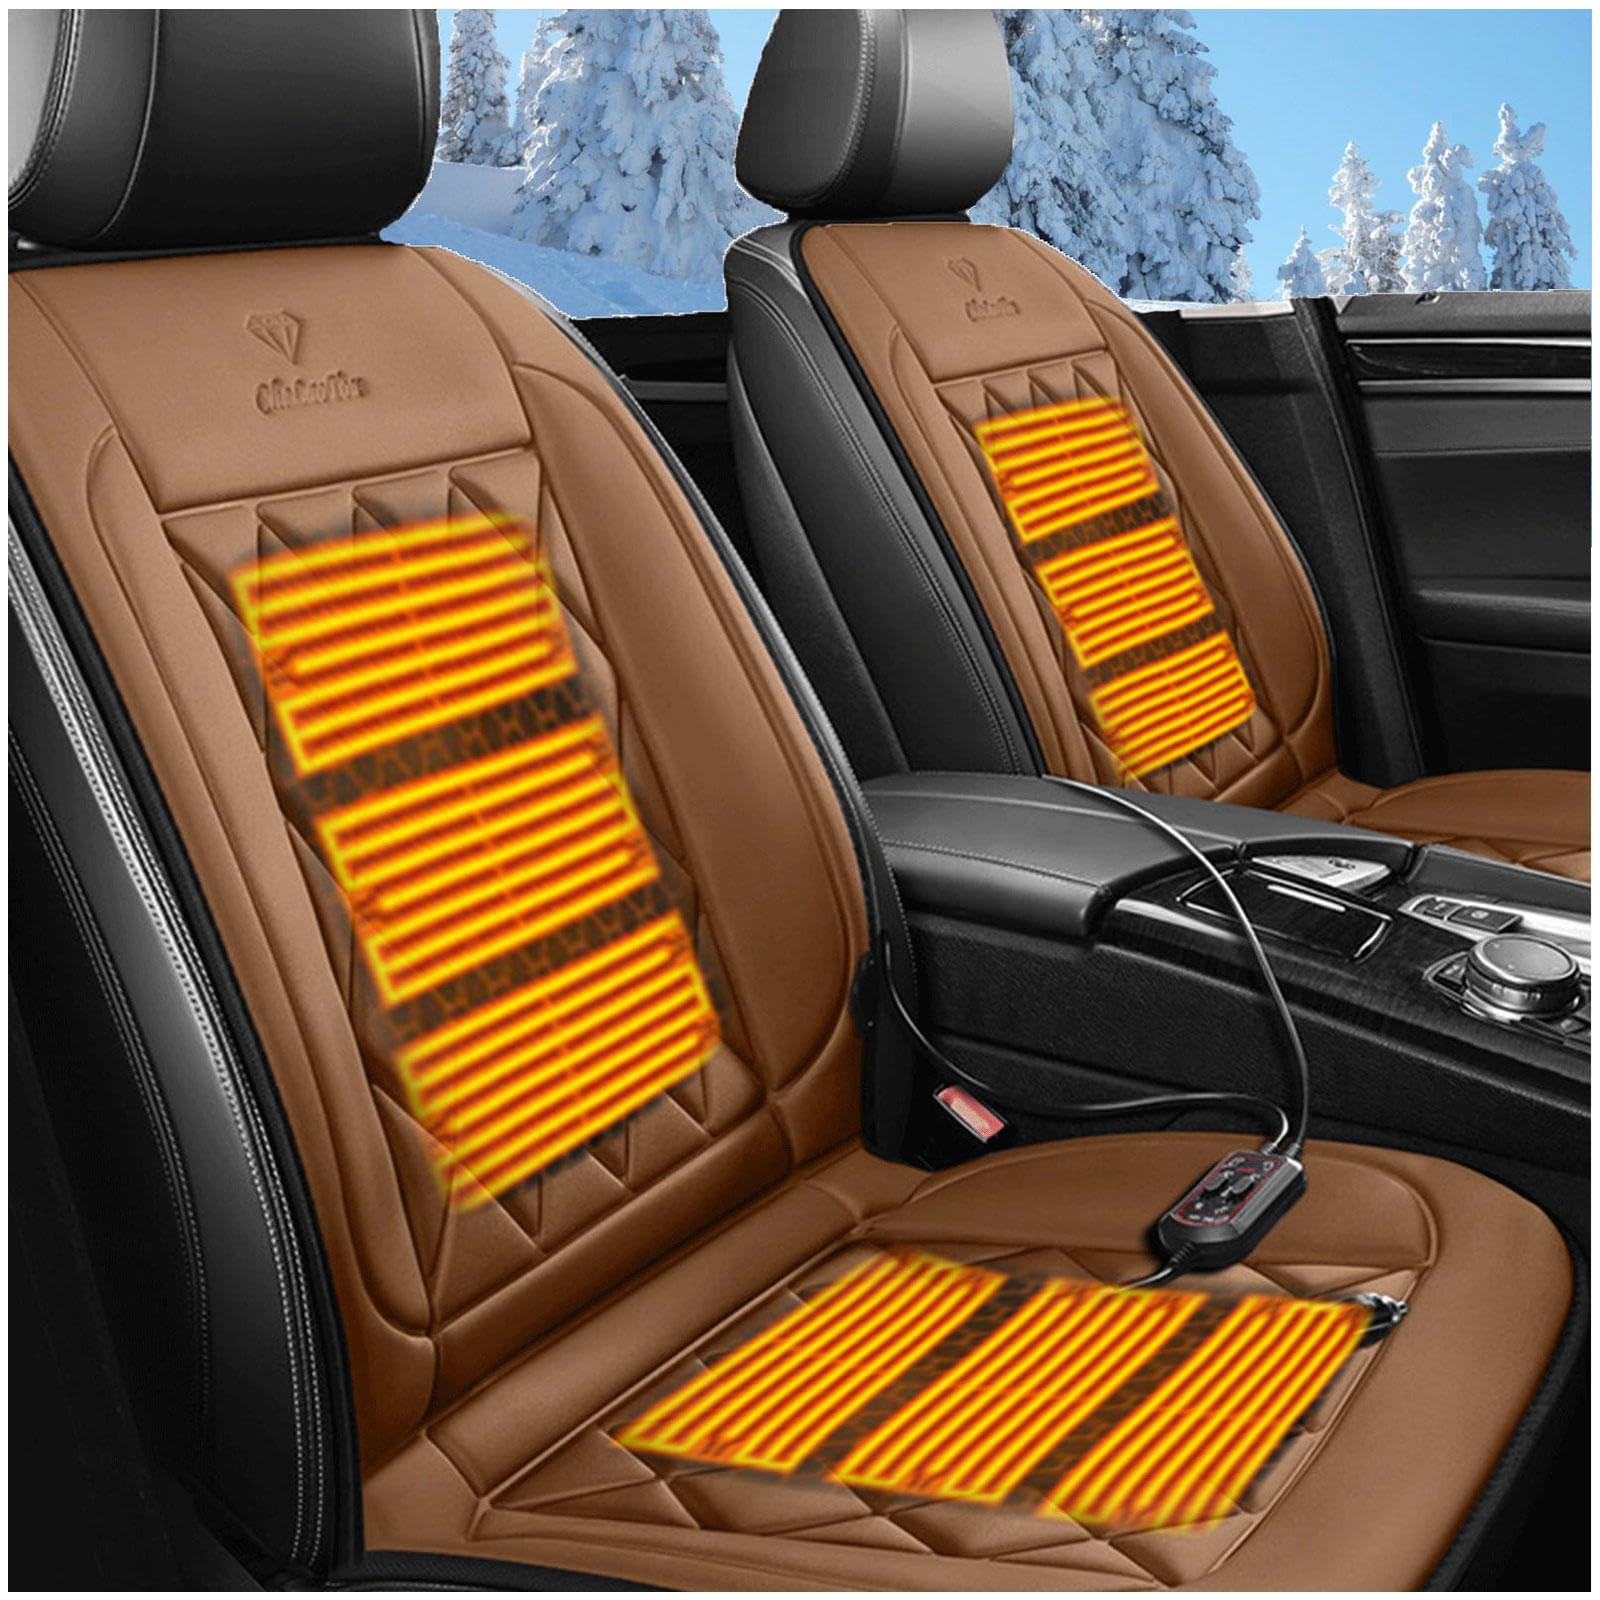 Wizvox 12V Sitzheizung Auflage, Einstellbare Temperatur, GleichmäßIge Wabenheizung, rutschfest Car Seat Cover, Compatible with 95% of Cars 0103,brown von Wizvox